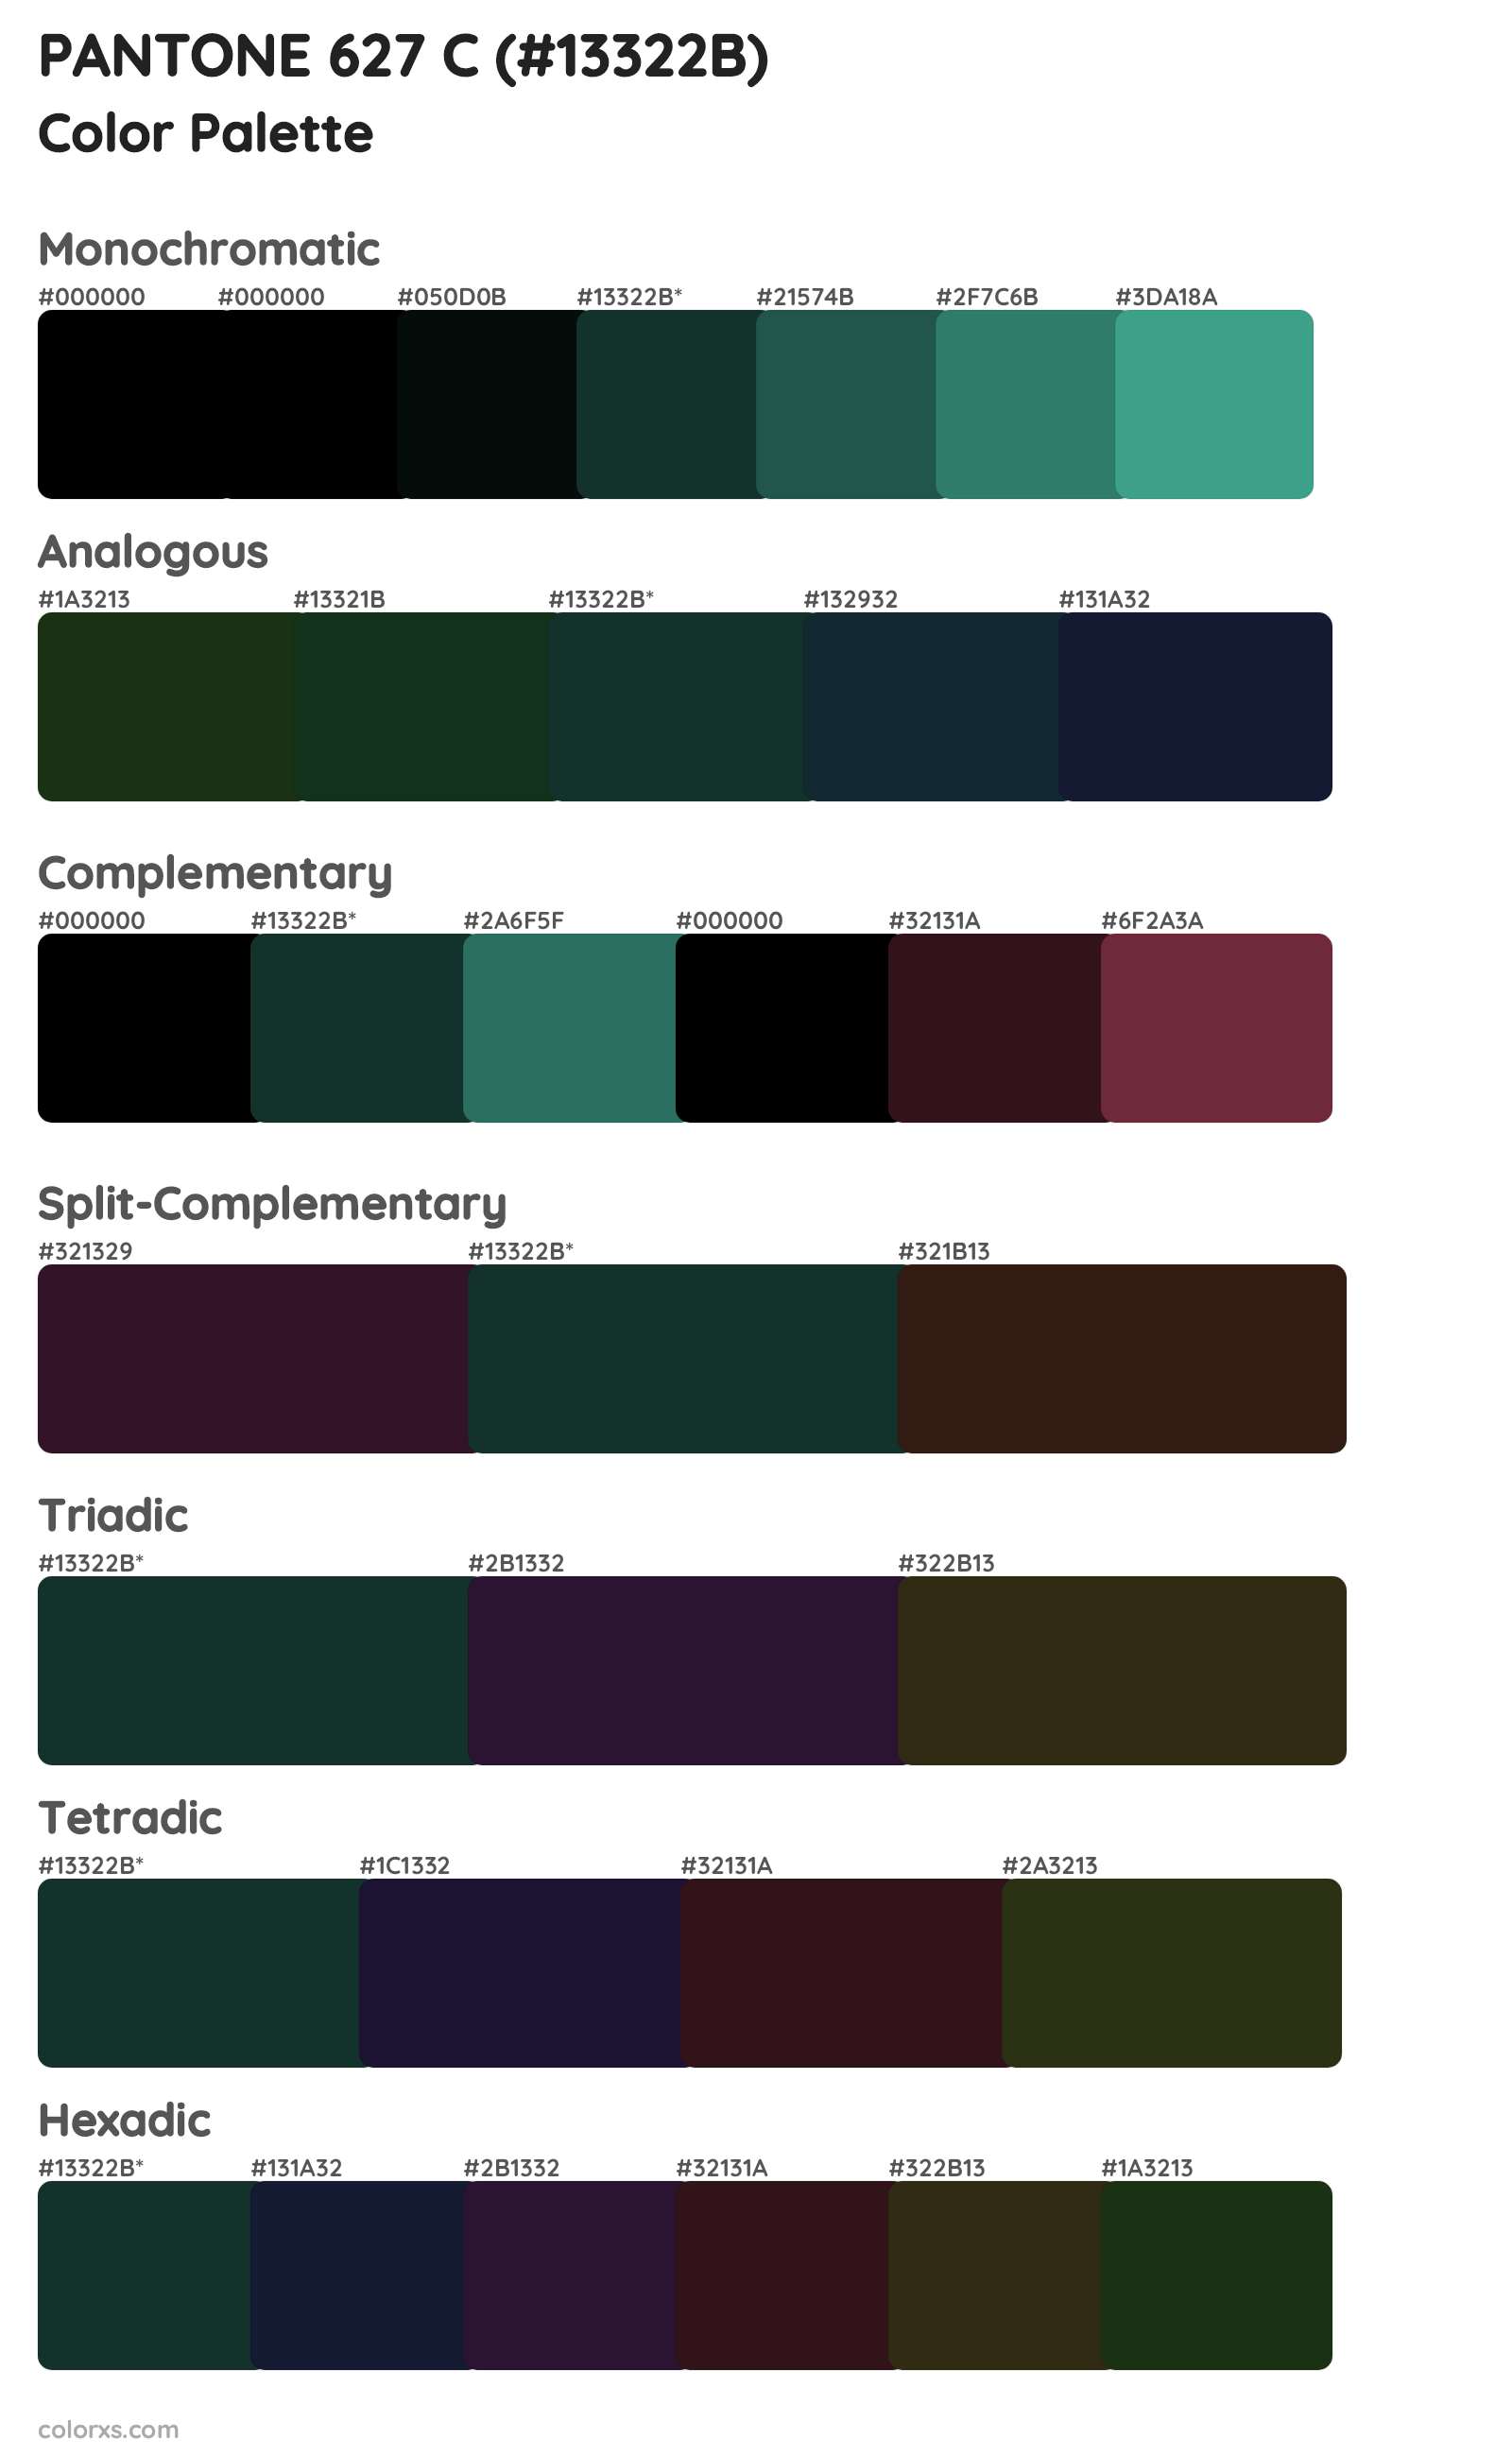 PANTONE 627 C Color Scheme Palettes